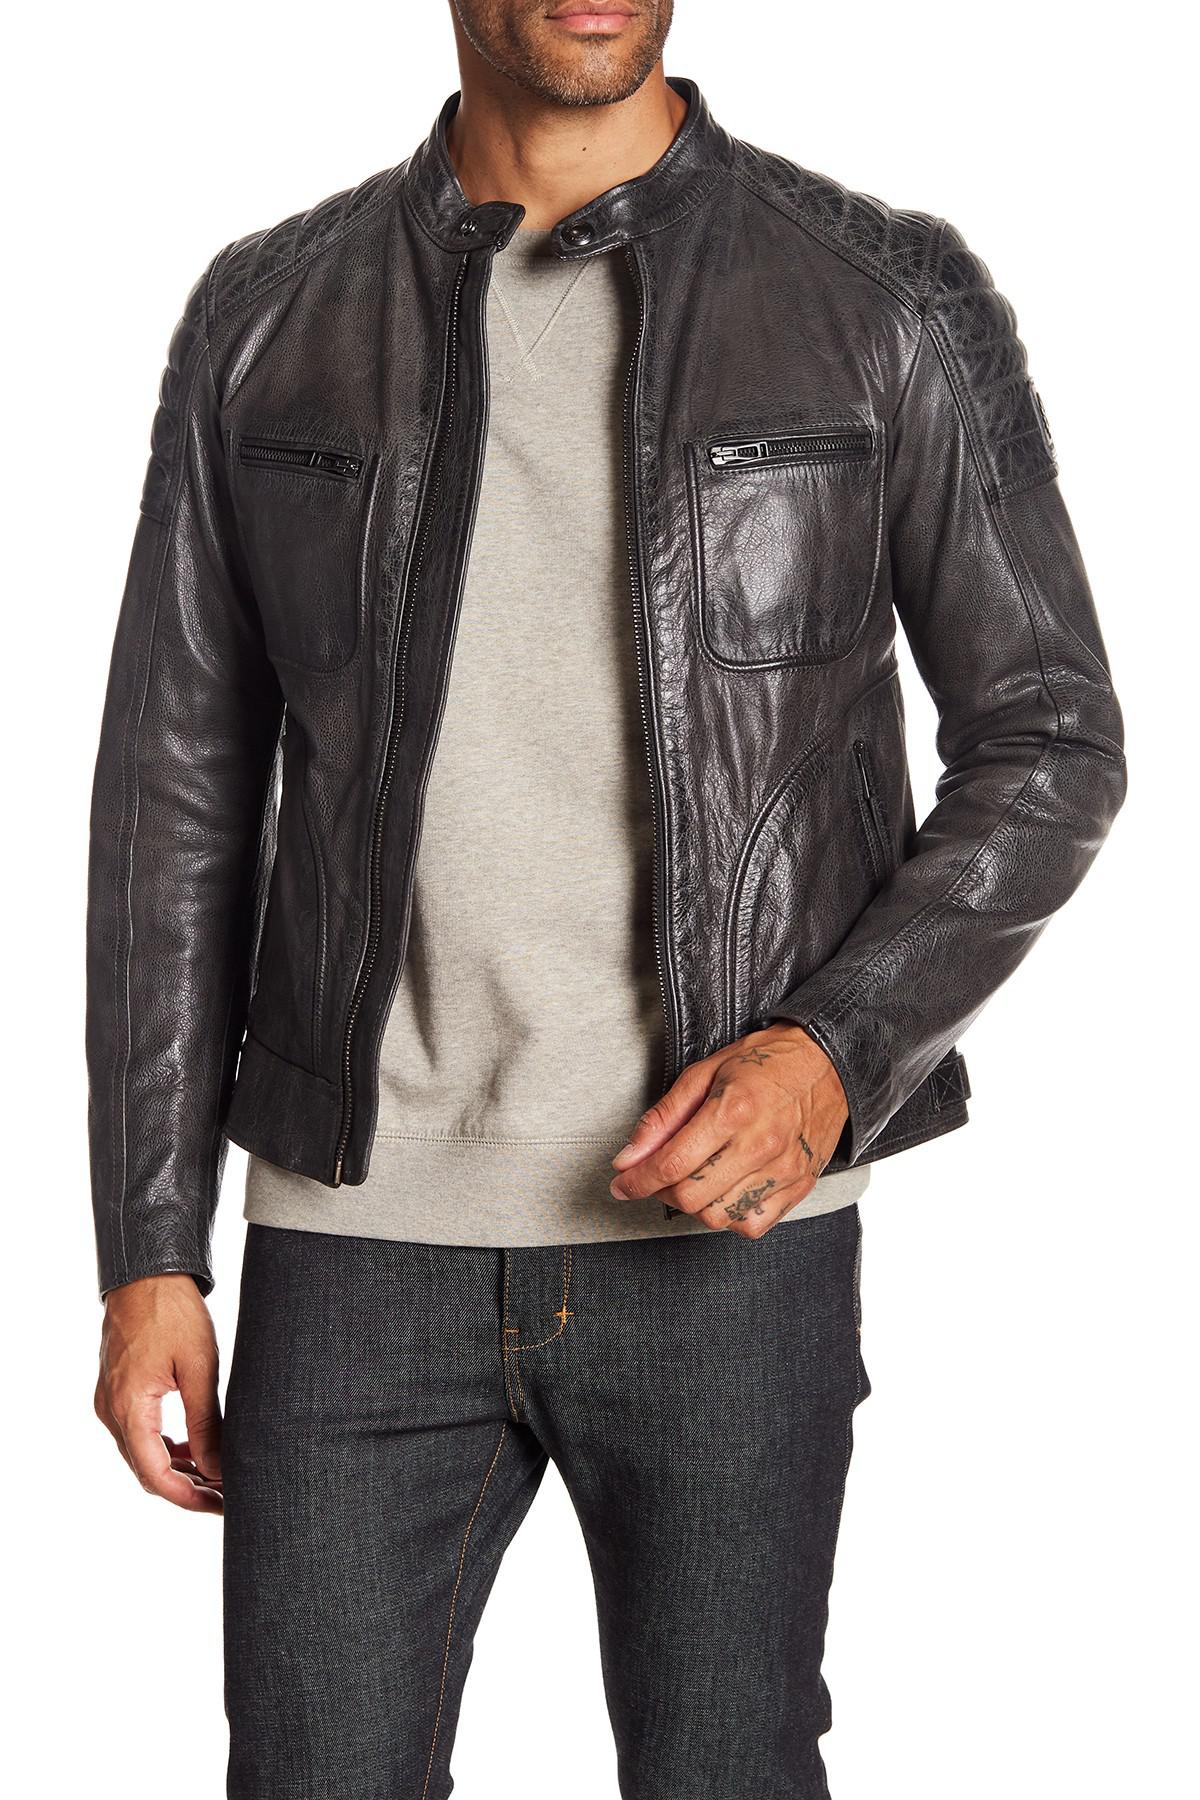 Belstaff Weybridge 2017 Leather Jacket in dk Grey (Gray) for Men - Lyst